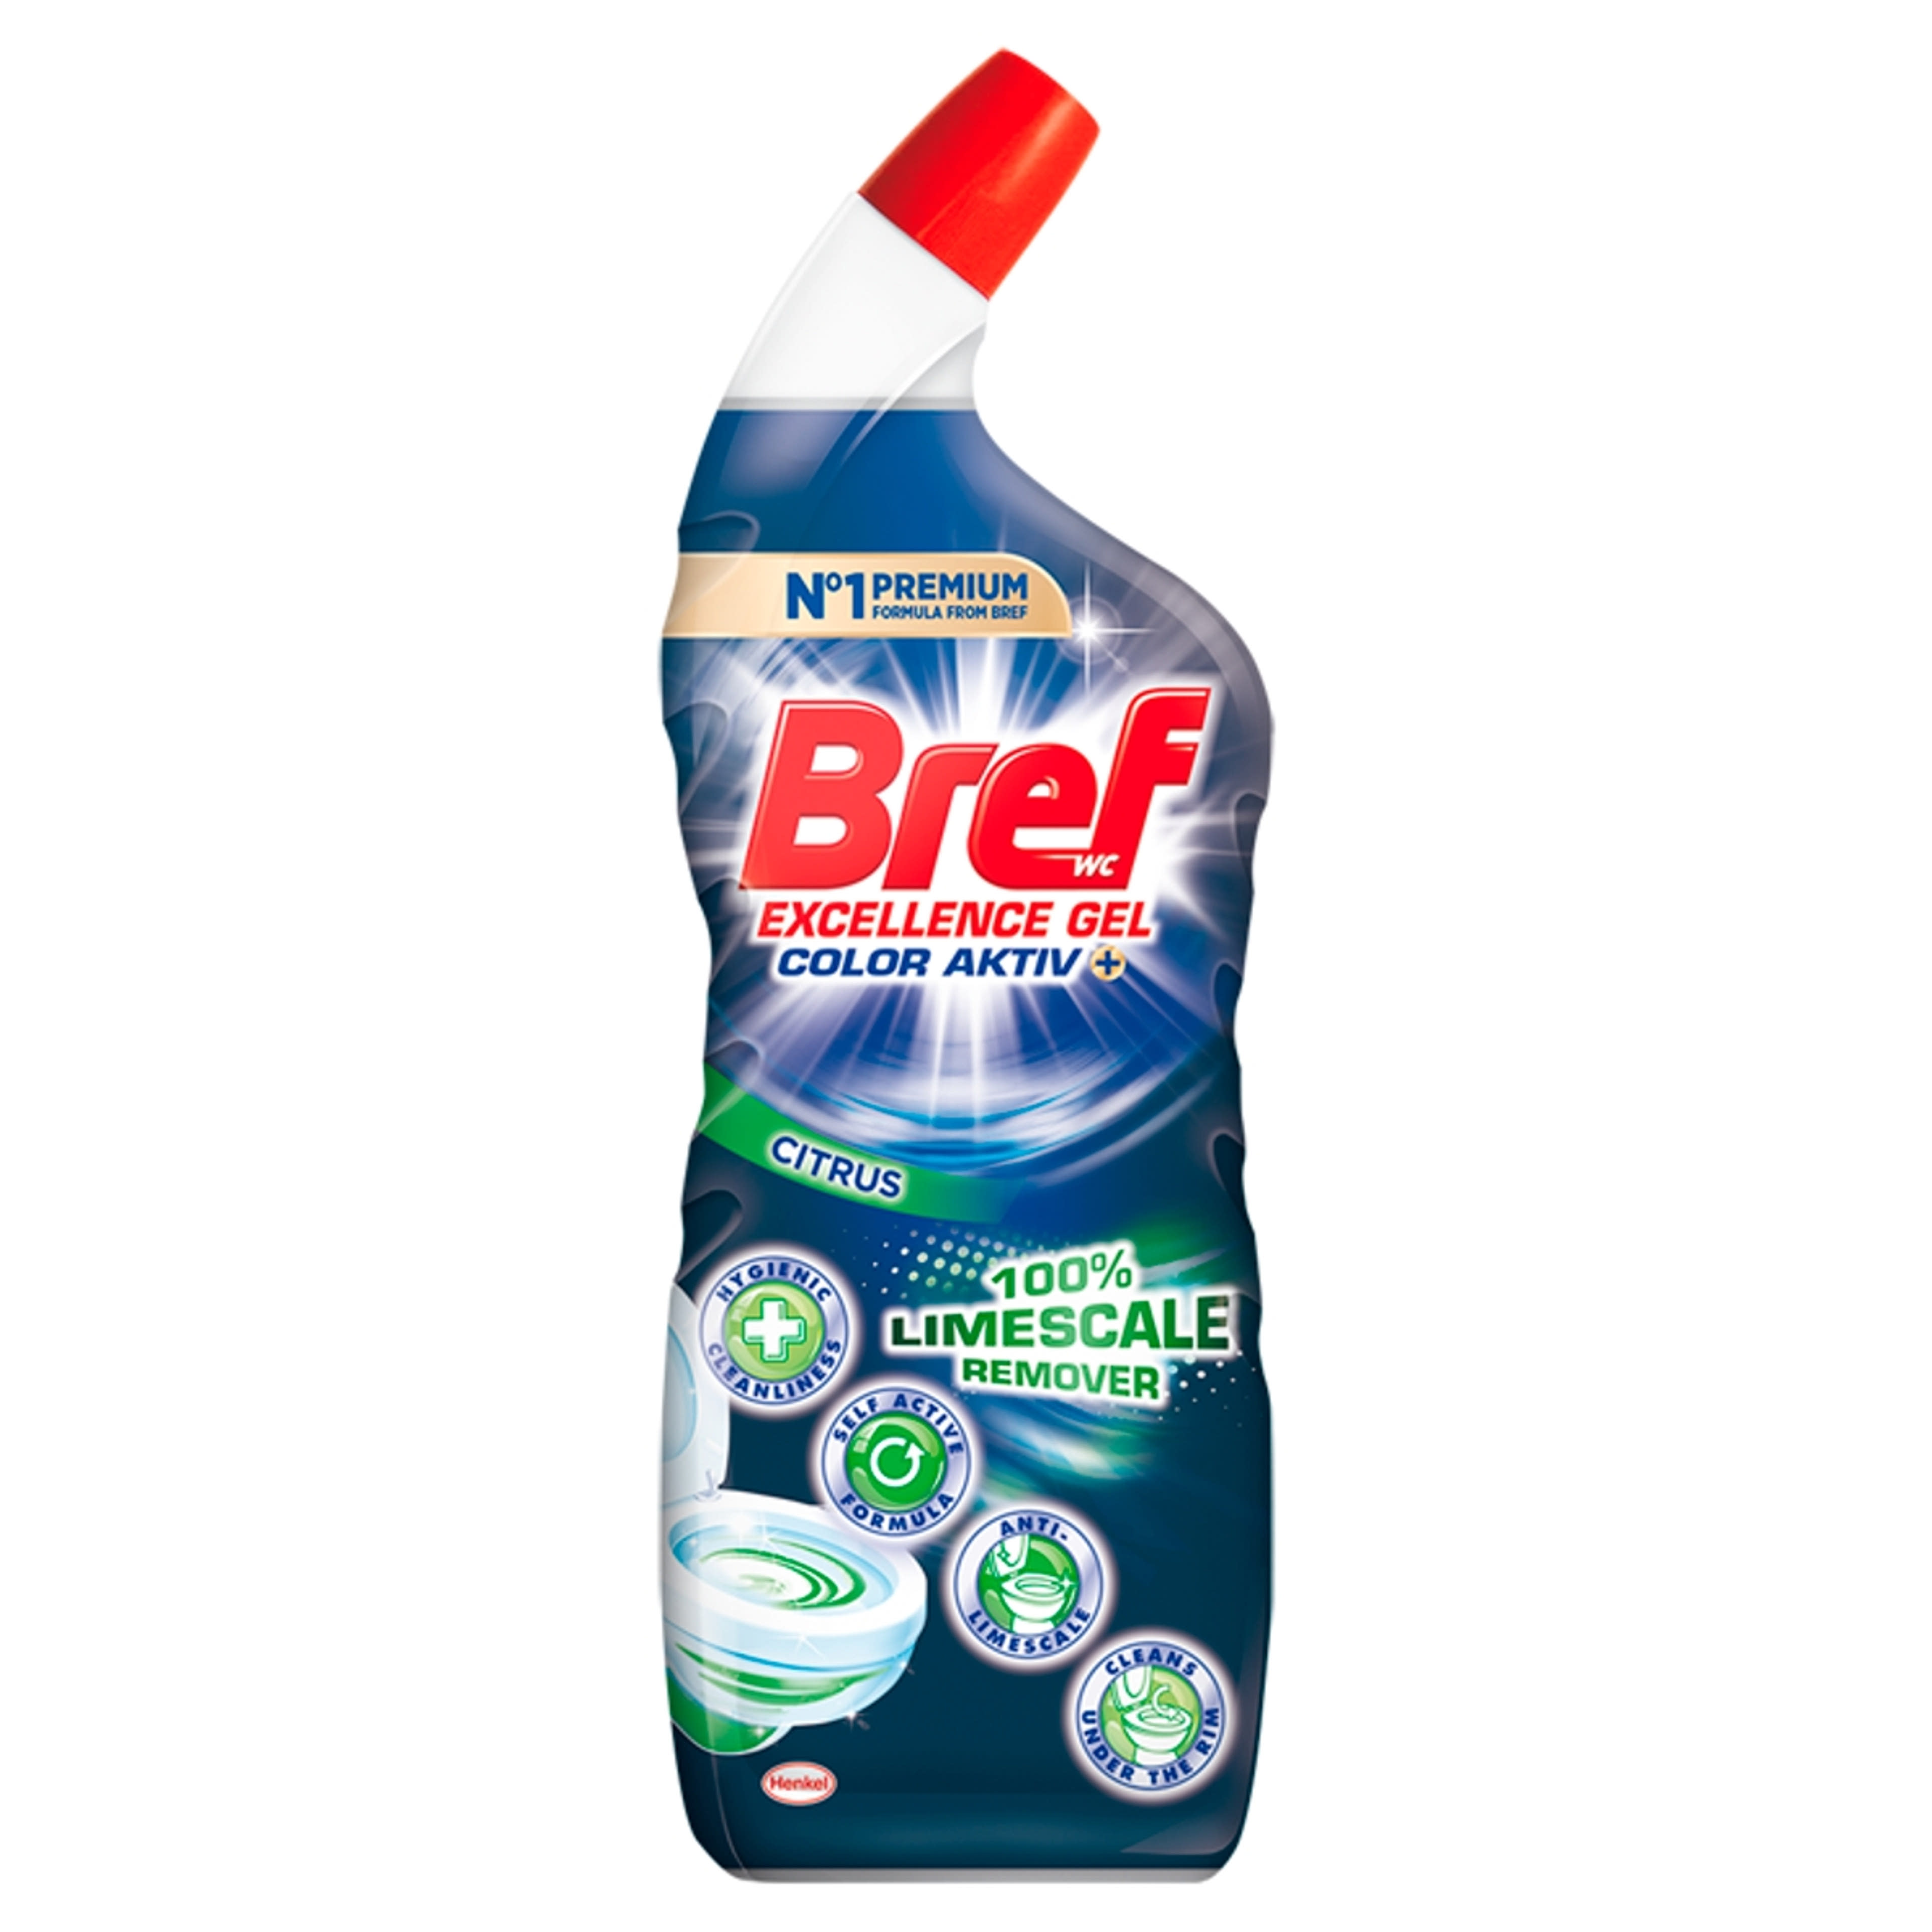 Bref Excellence Gel Color Activ+ Citrus folyékony WC tisztítószer - 700 ml